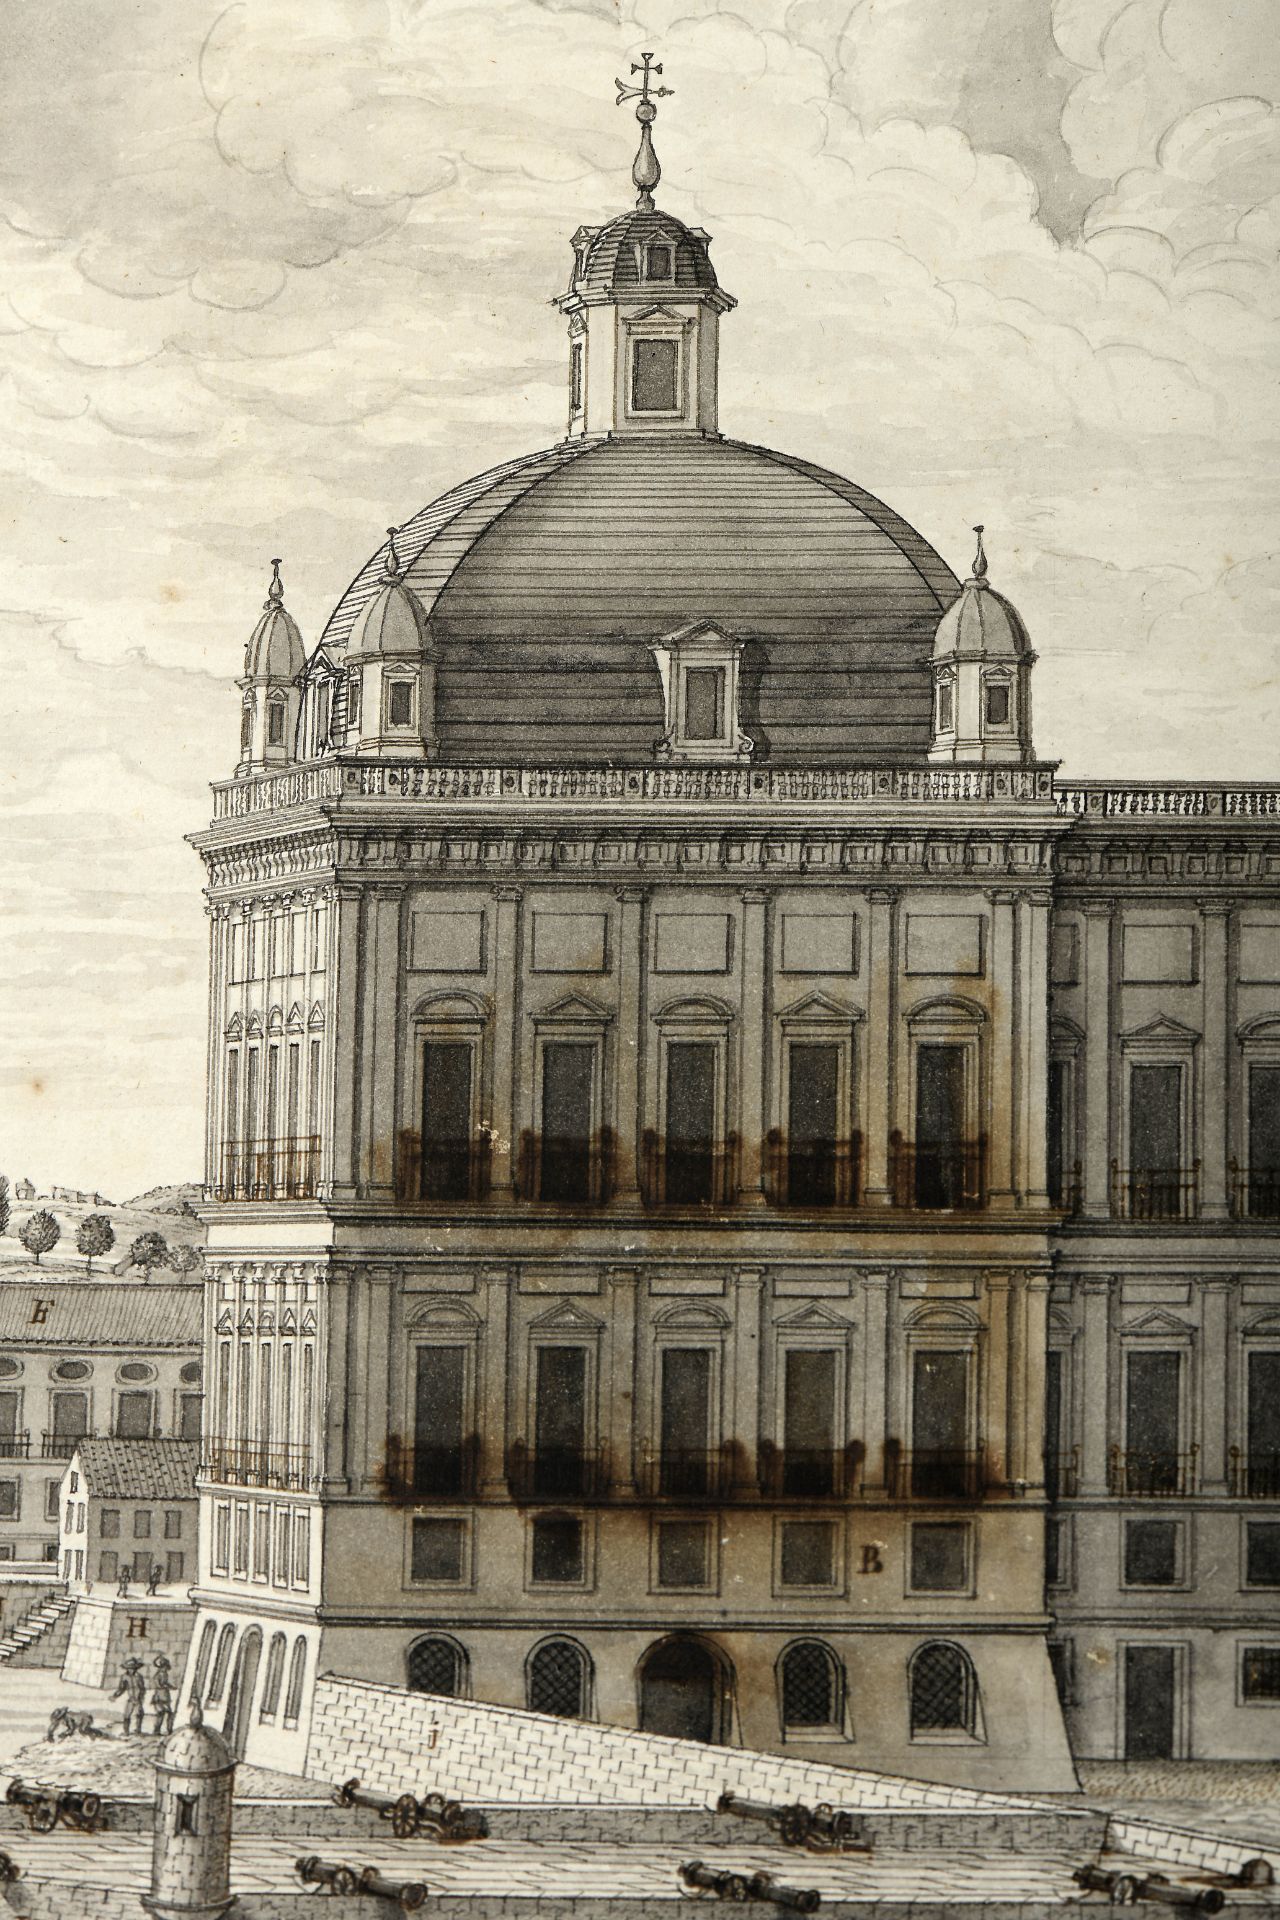 ZUZARTE - atc. 1787 - Bild 8 aus 20